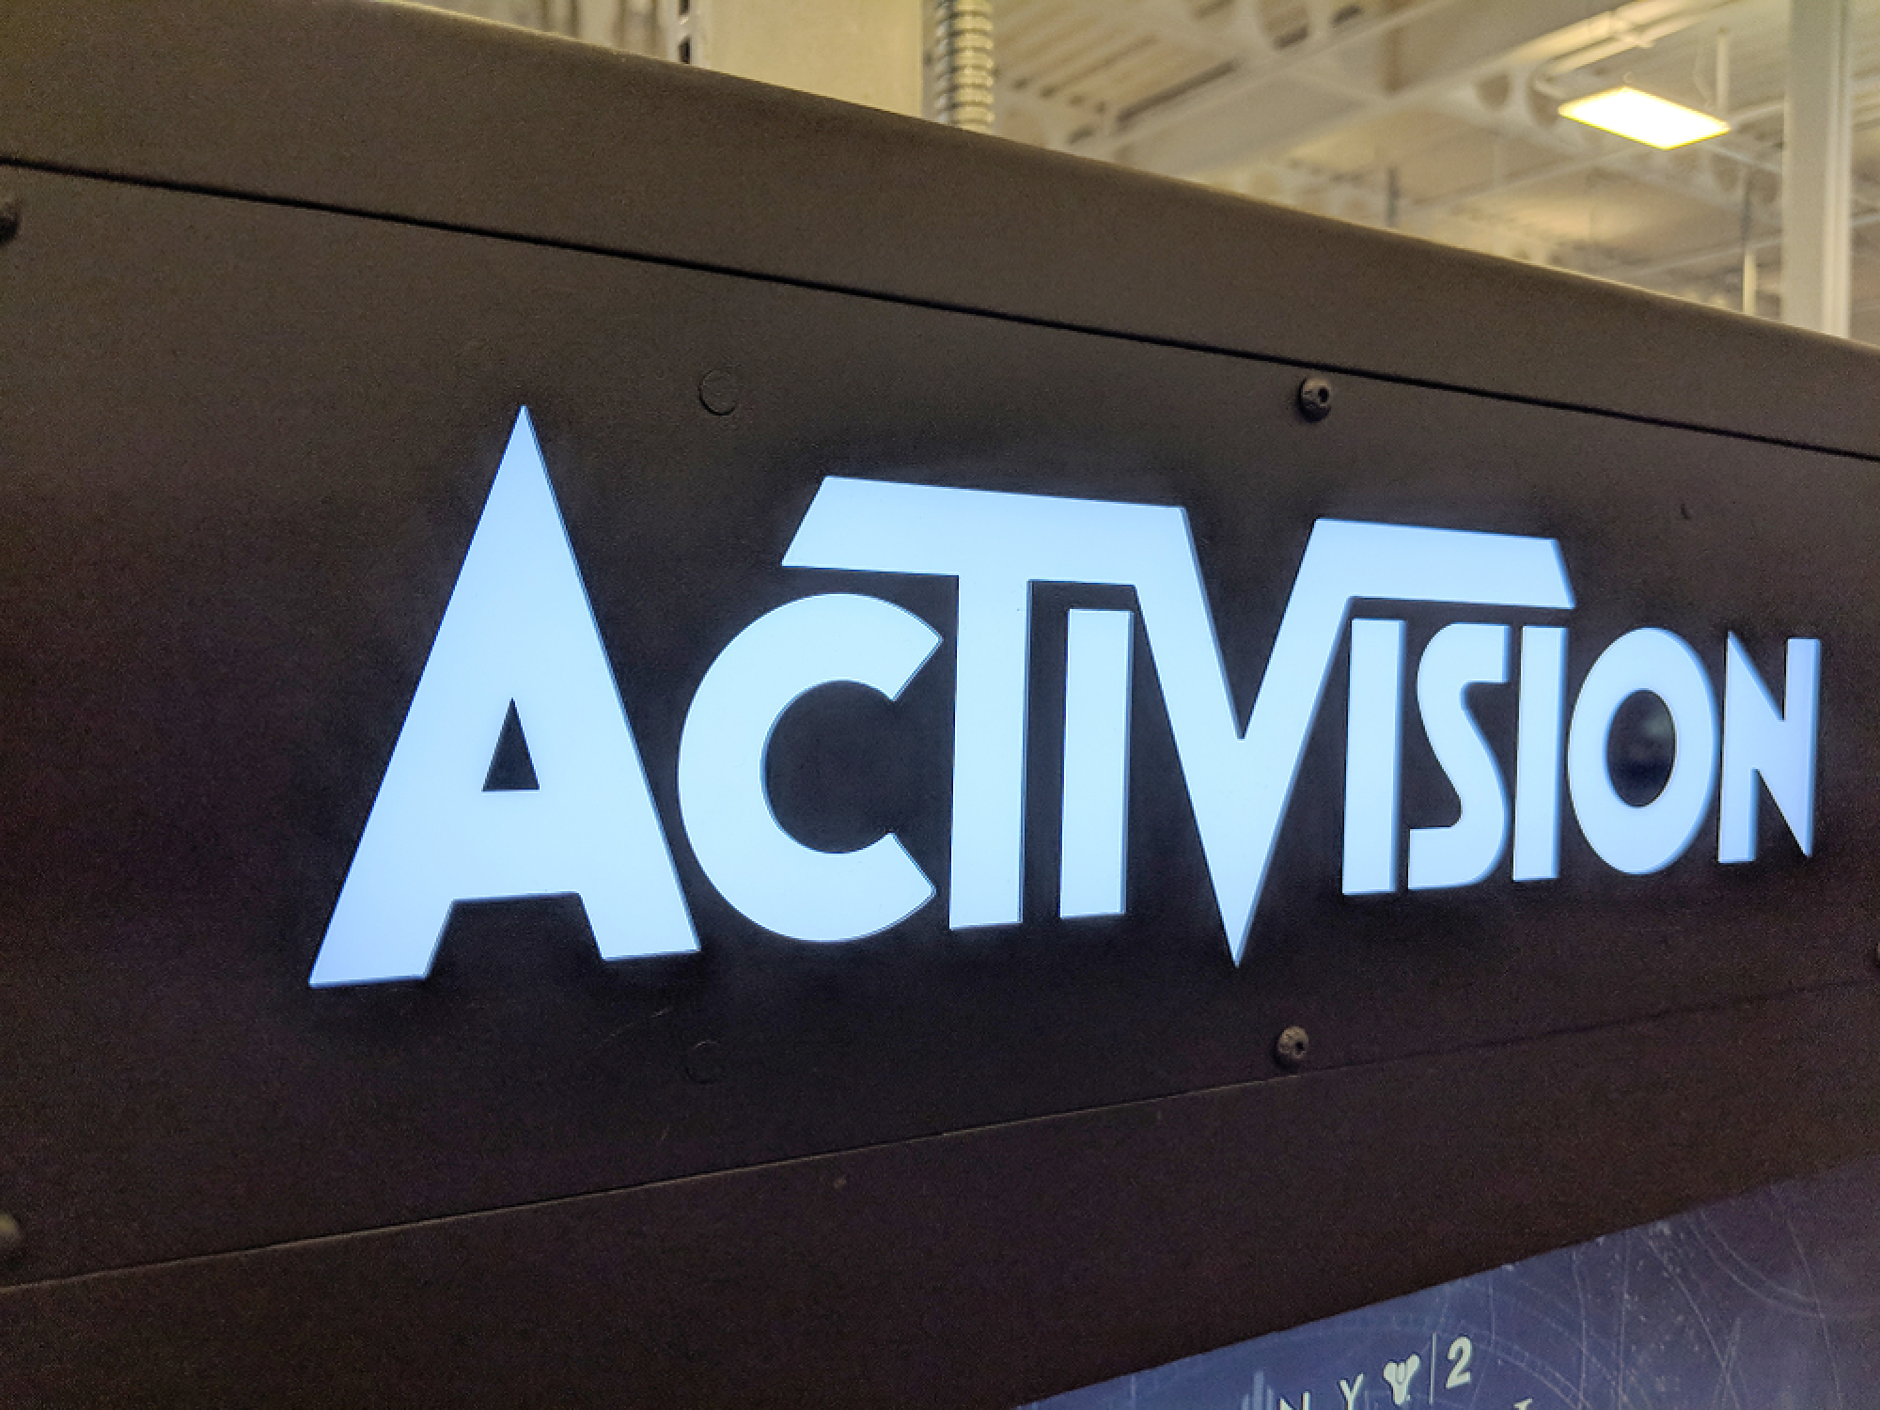 Activision ще плати 50 млн. долара за уреждане на съдебно дело за дискриминация на работното място